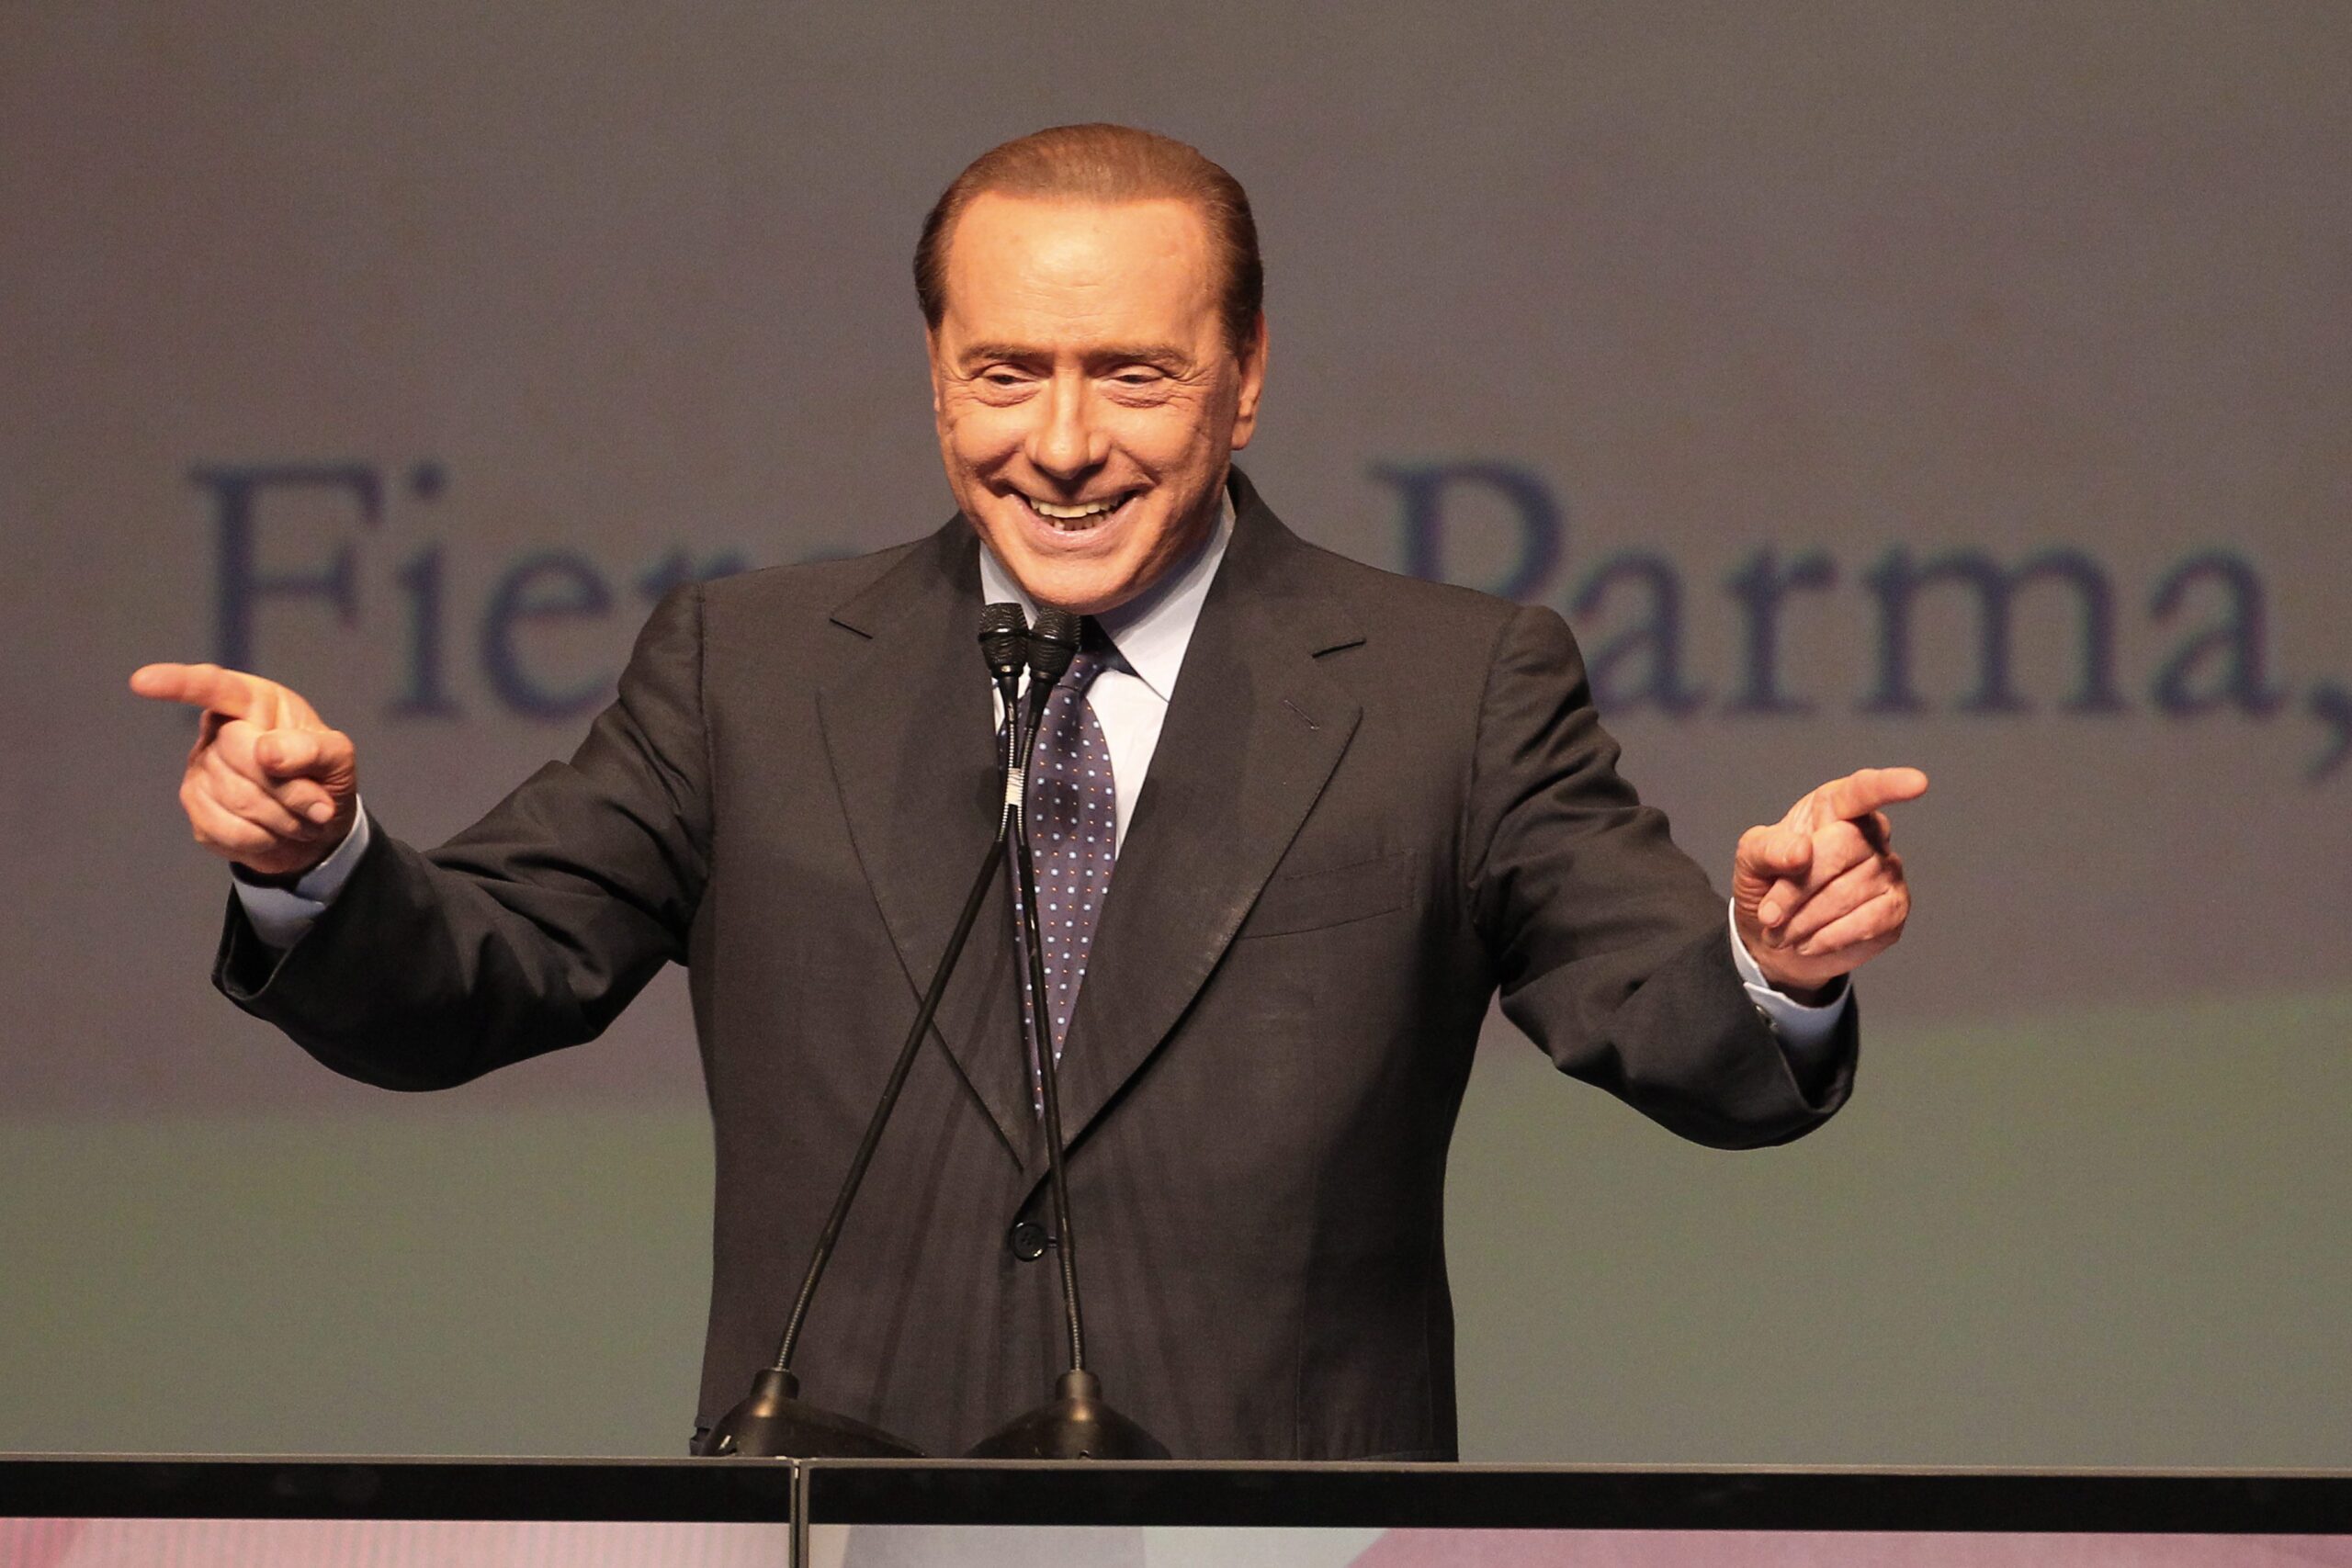 Silvio Berlusconi tijdens een conferentie over 'Vrijheid en Welzijn' in 2010. Foto: EPA/GIORGIO BENVENUTI